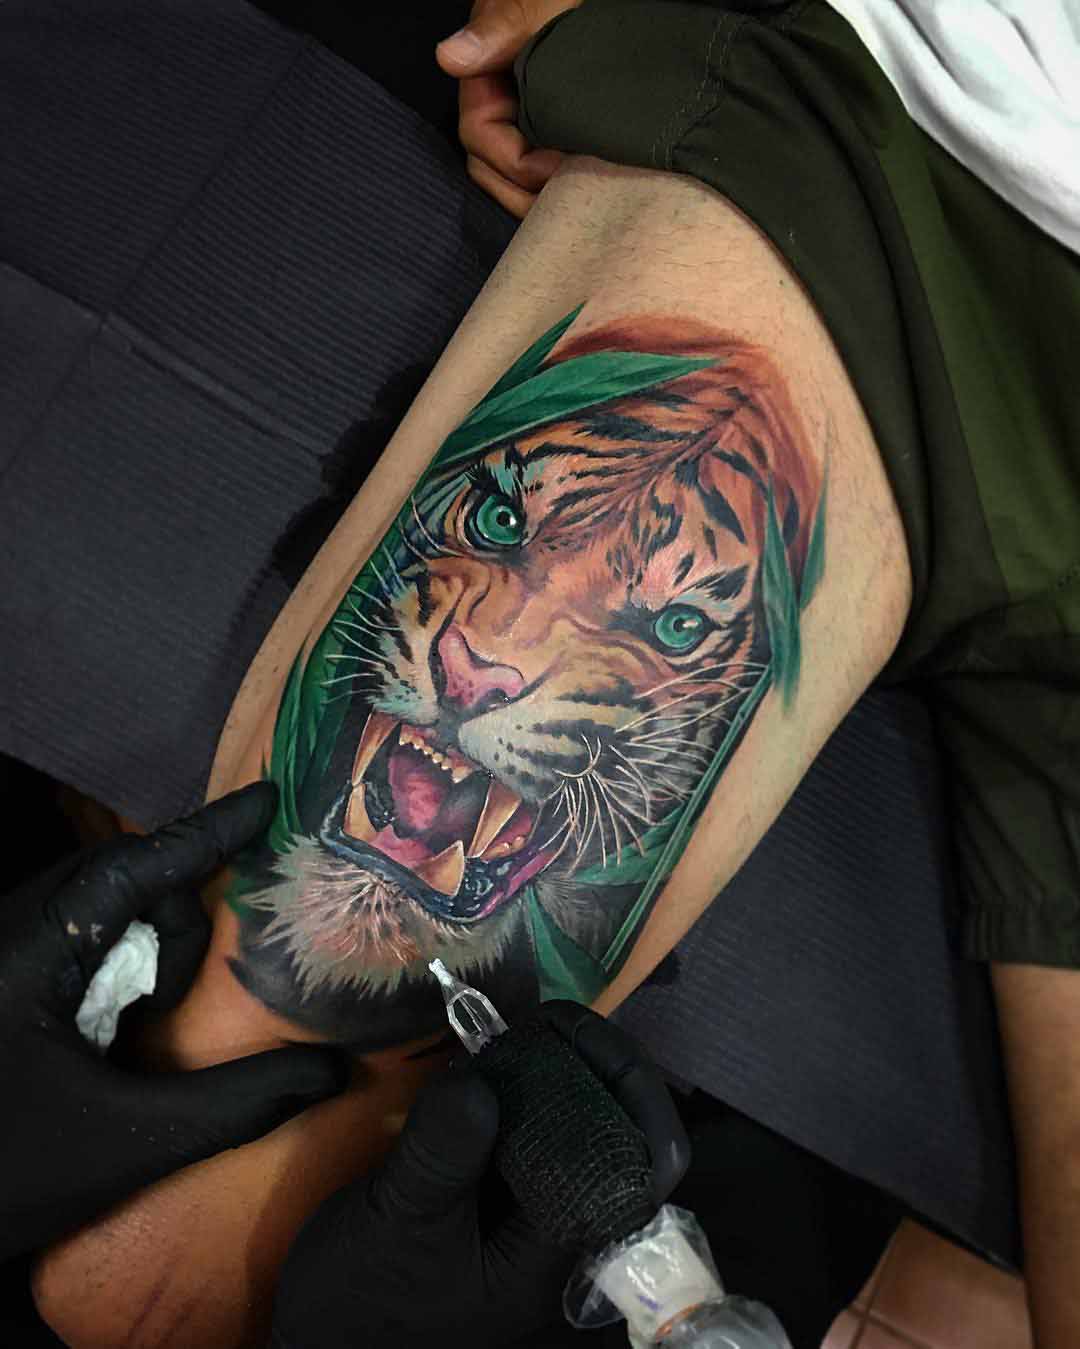 Tiger Thigh Tattoo - Best Tattoo Ideas Gallery